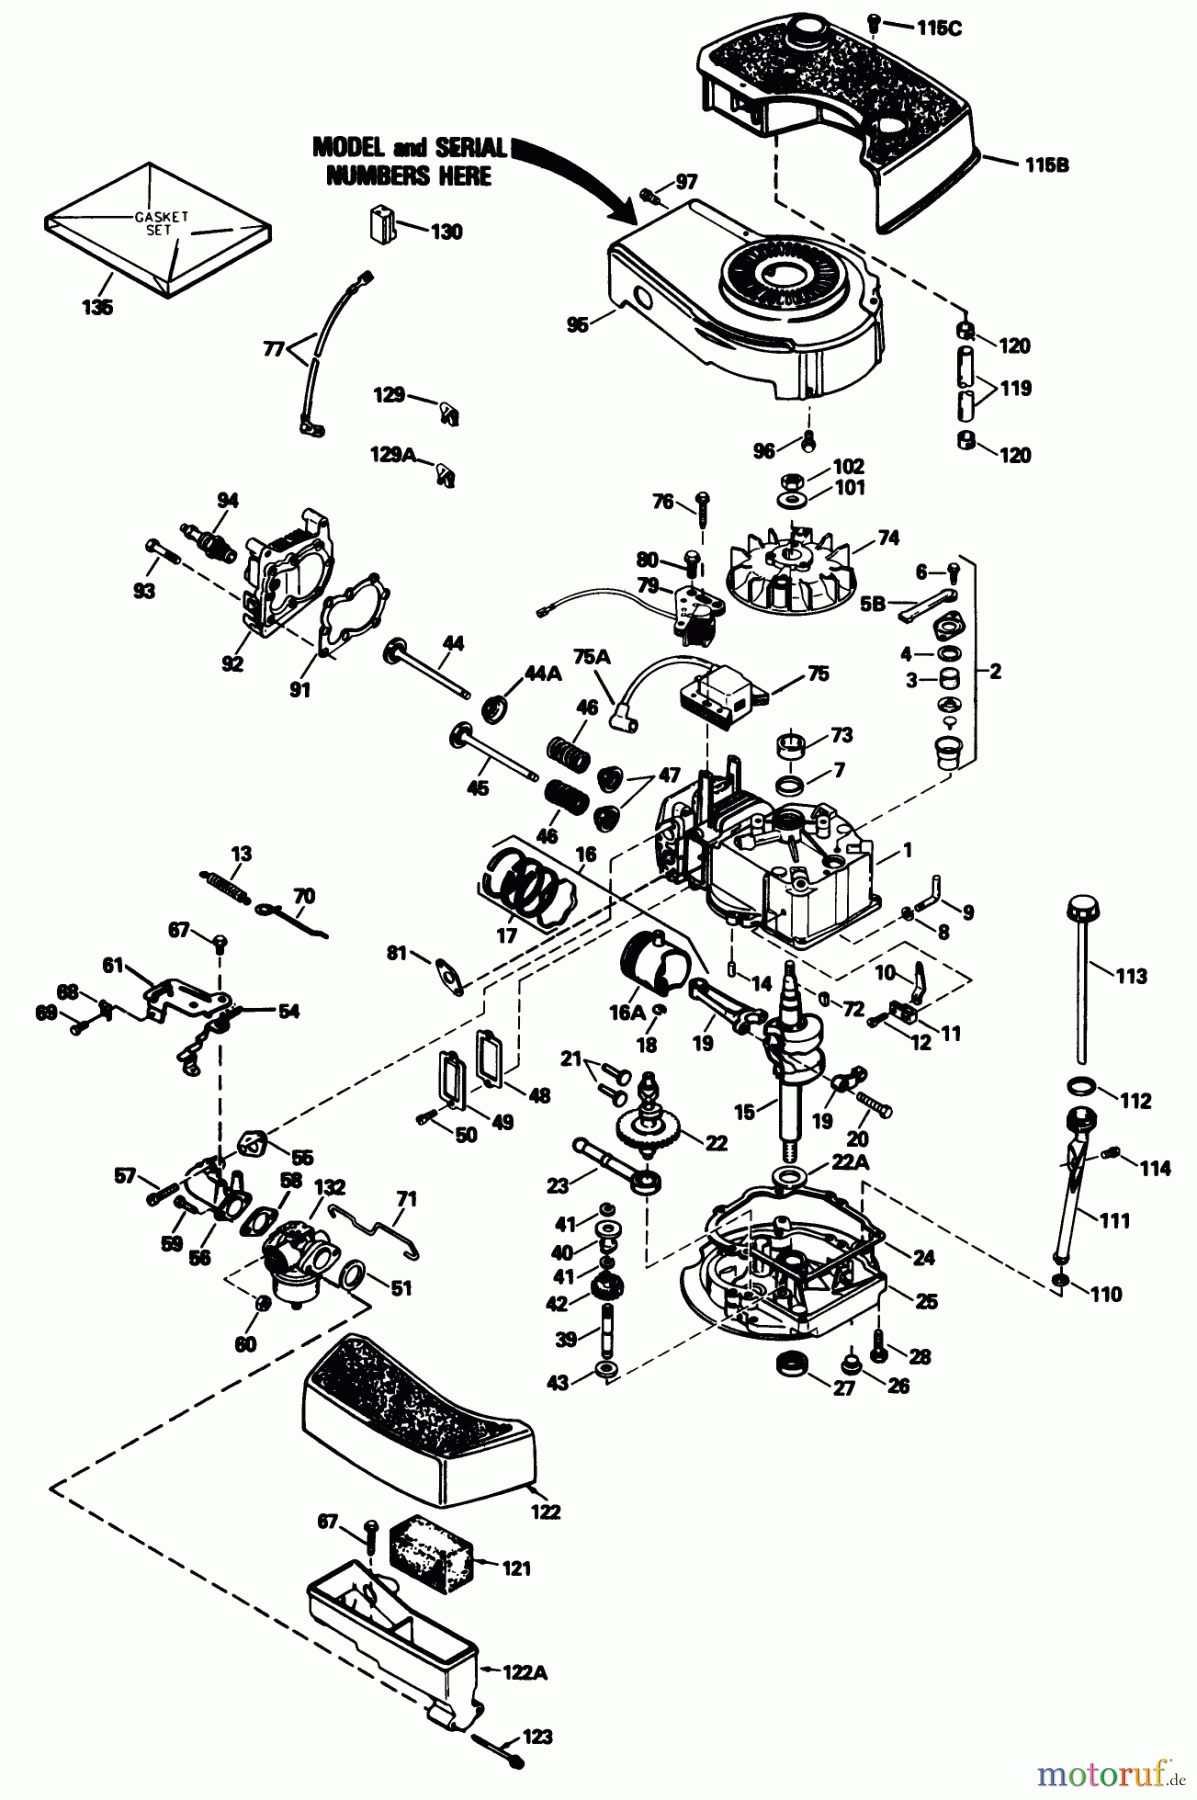  Toro Neu Mowers, Walk-Behind Seite 1 16793 - Toro Lawnmower, 1990 (0000001-0999999) ENGINE TECUMSEH MODEL NO. TNT 100-10104F